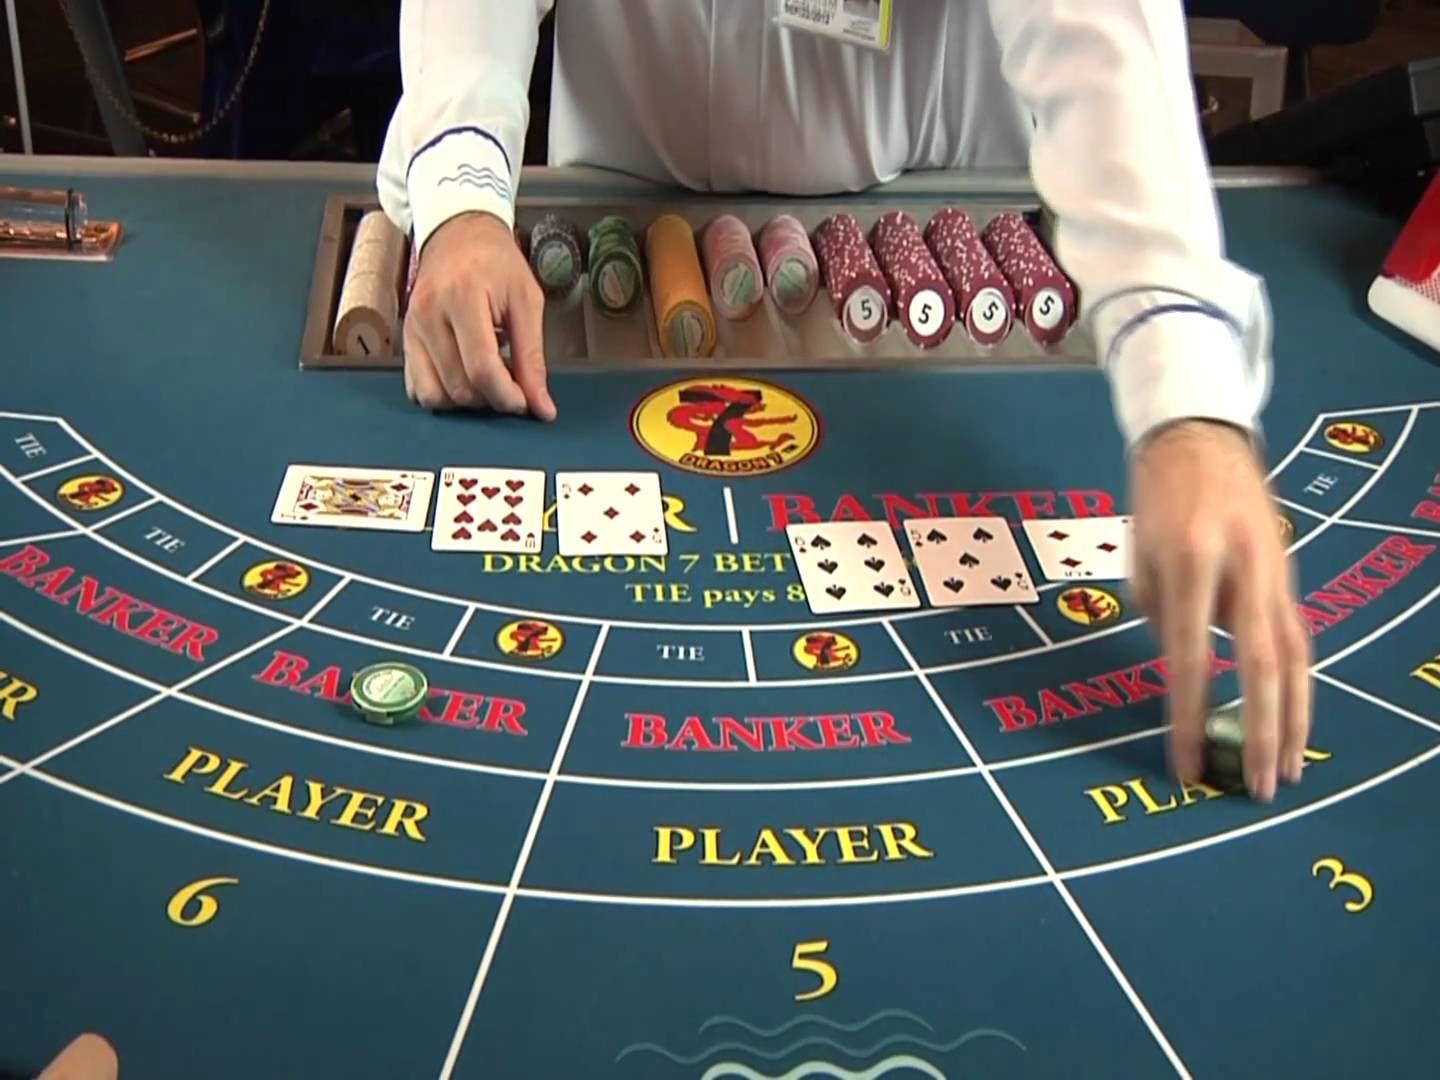 Juego al bacará en vivo ruletas de casinos - 58418